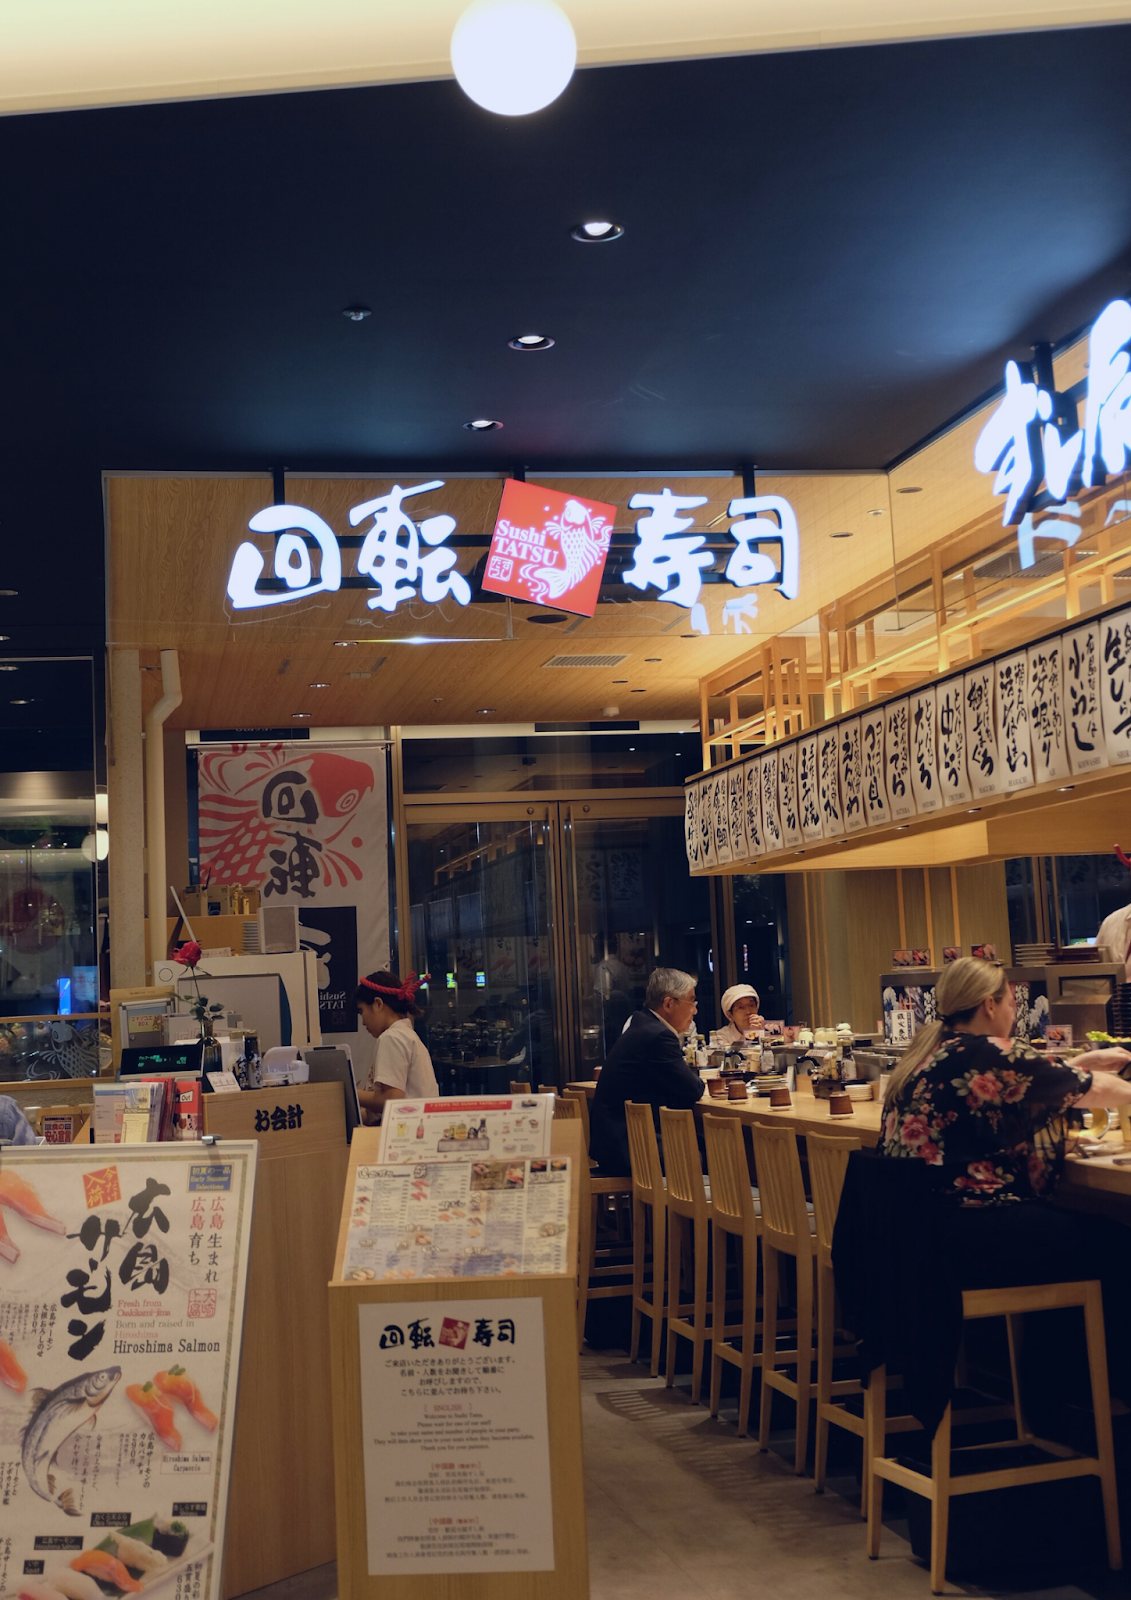 Sushi Tatsu Hiroshima Curitan Aqalili